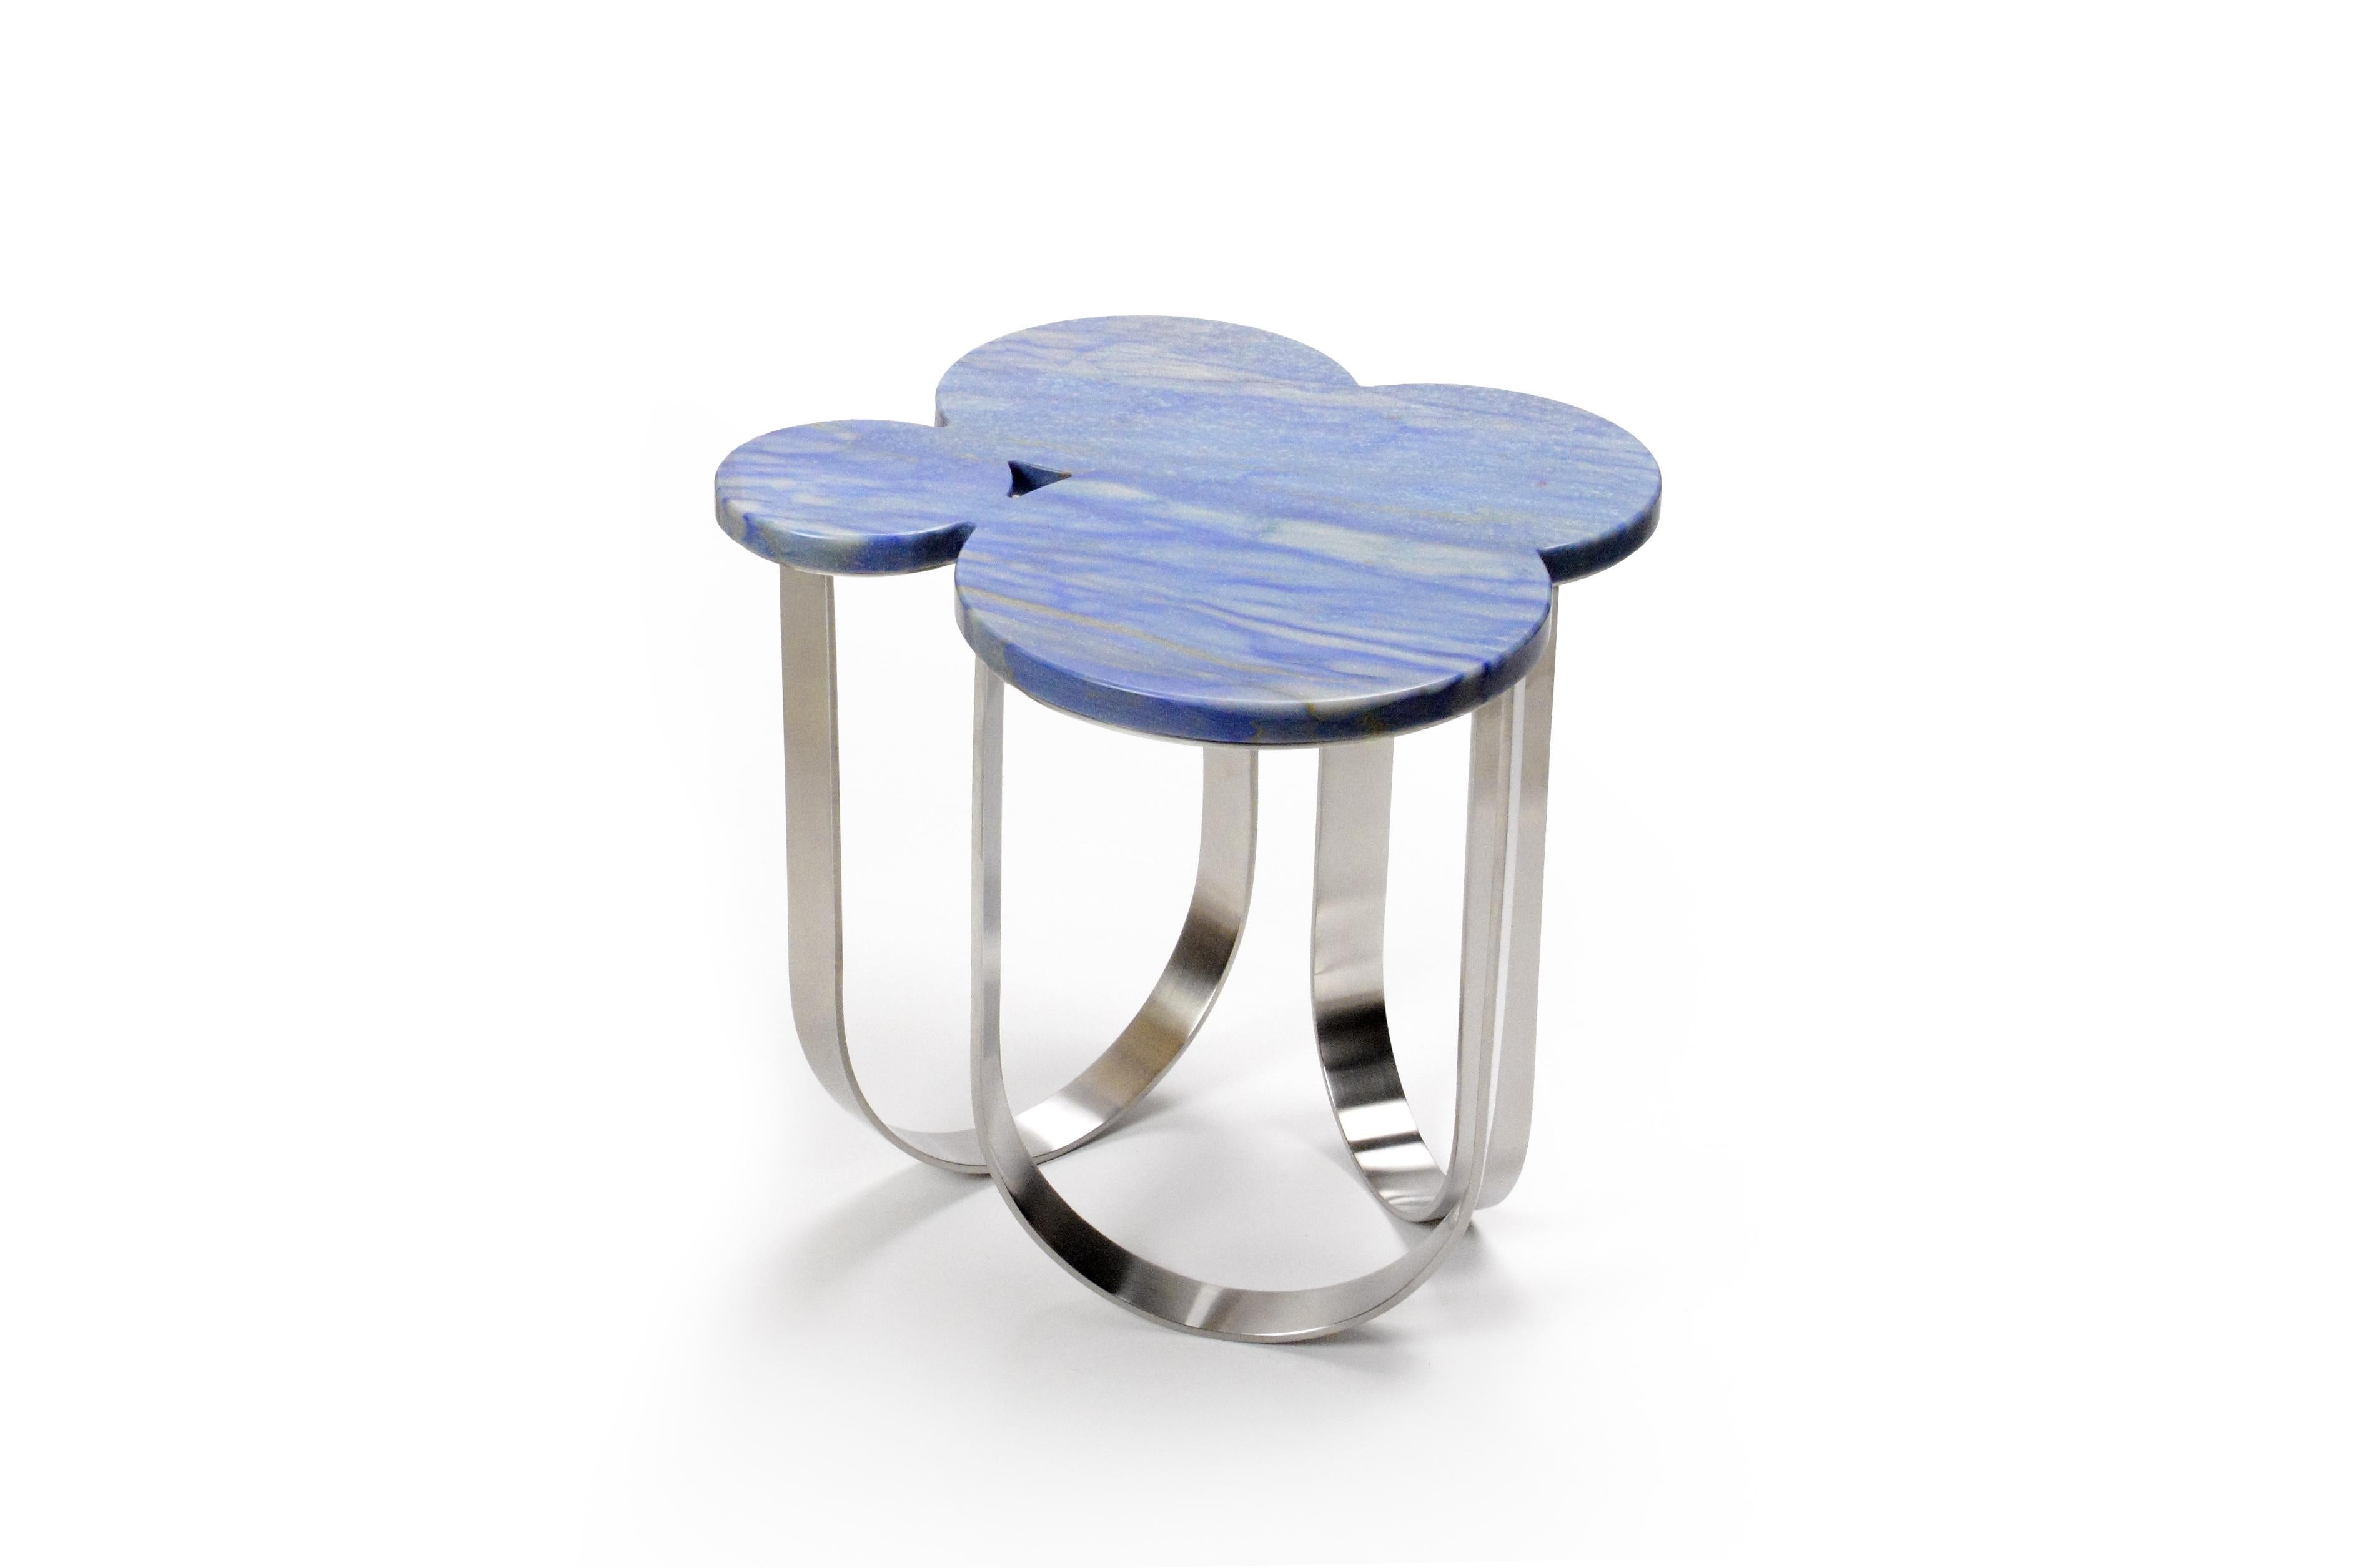 Le 'Cloud' est une table d'appoint spectaculaire avec une structure en acier inoxydable brossé et un plateau en quartzite Azul Macaubas.
La finition miroir de l'acier inoxydable crée différentes perceptions de ce matériau particulier et permet